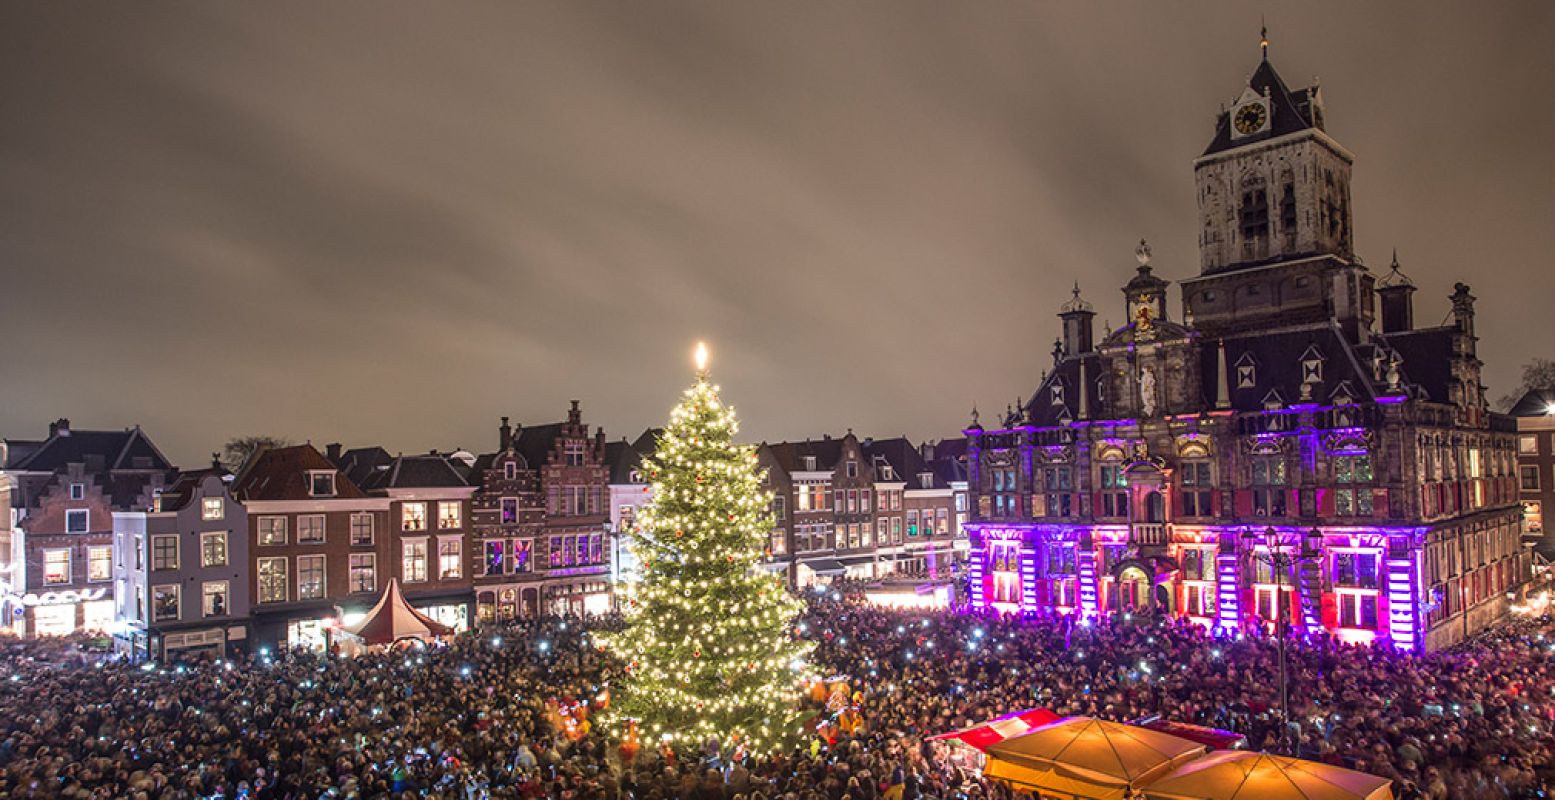 Tijdens Lichtjesavond wordt de historische binnenstad van Delft prachtig verlicht, met de Markt als stralend middelpunt. Foto: De Donkere Dagen van Delft © De Burgemeesters.